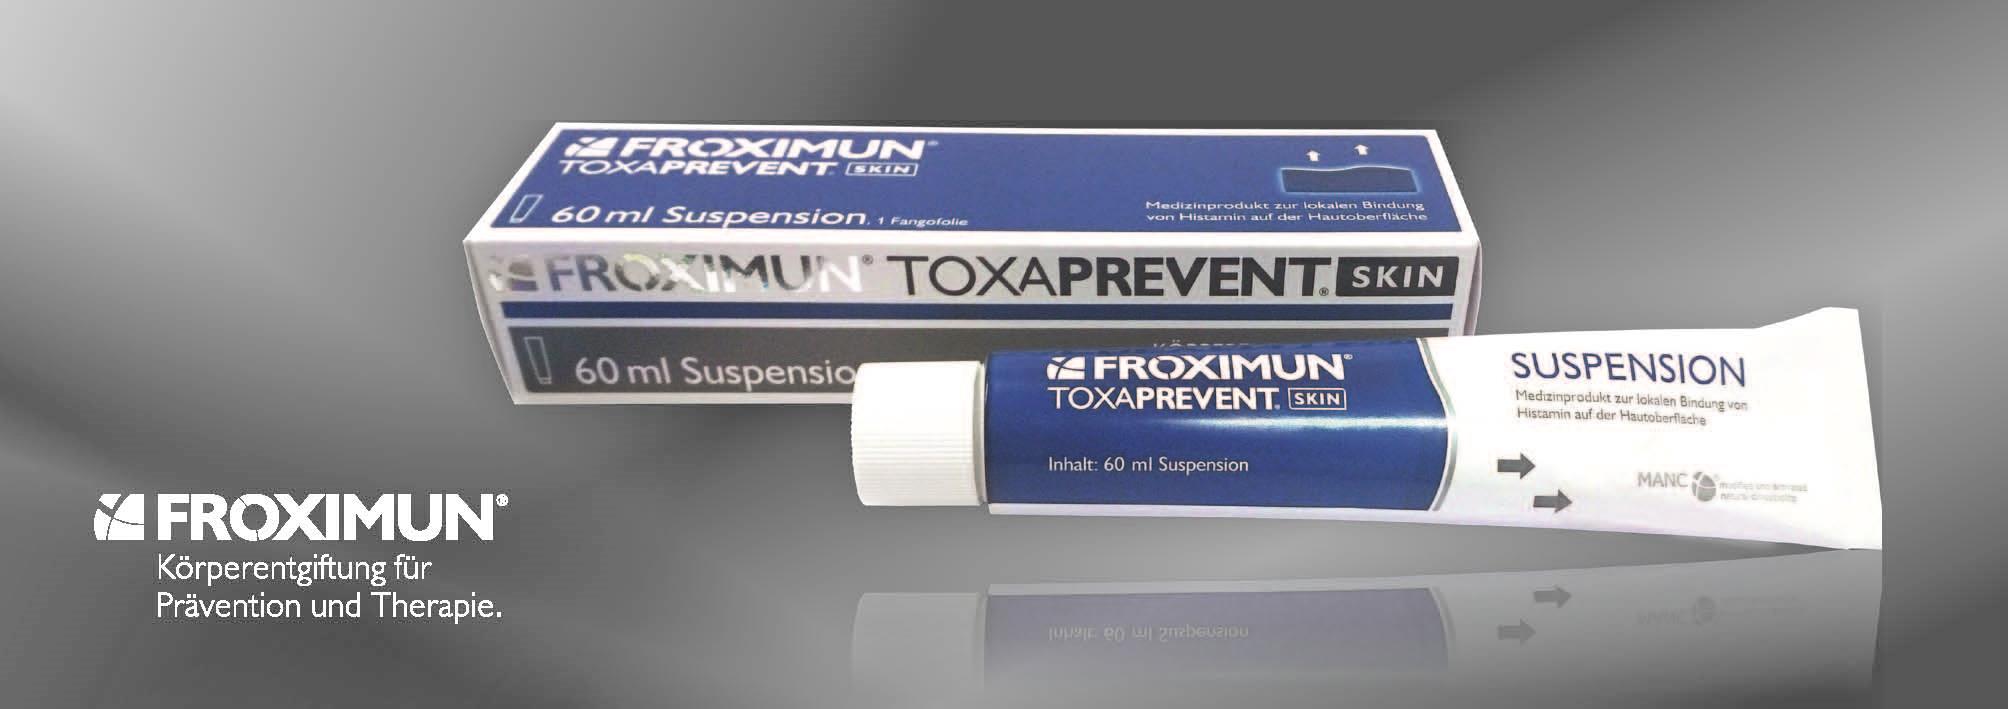 Froximun Toxaprevent Suspension